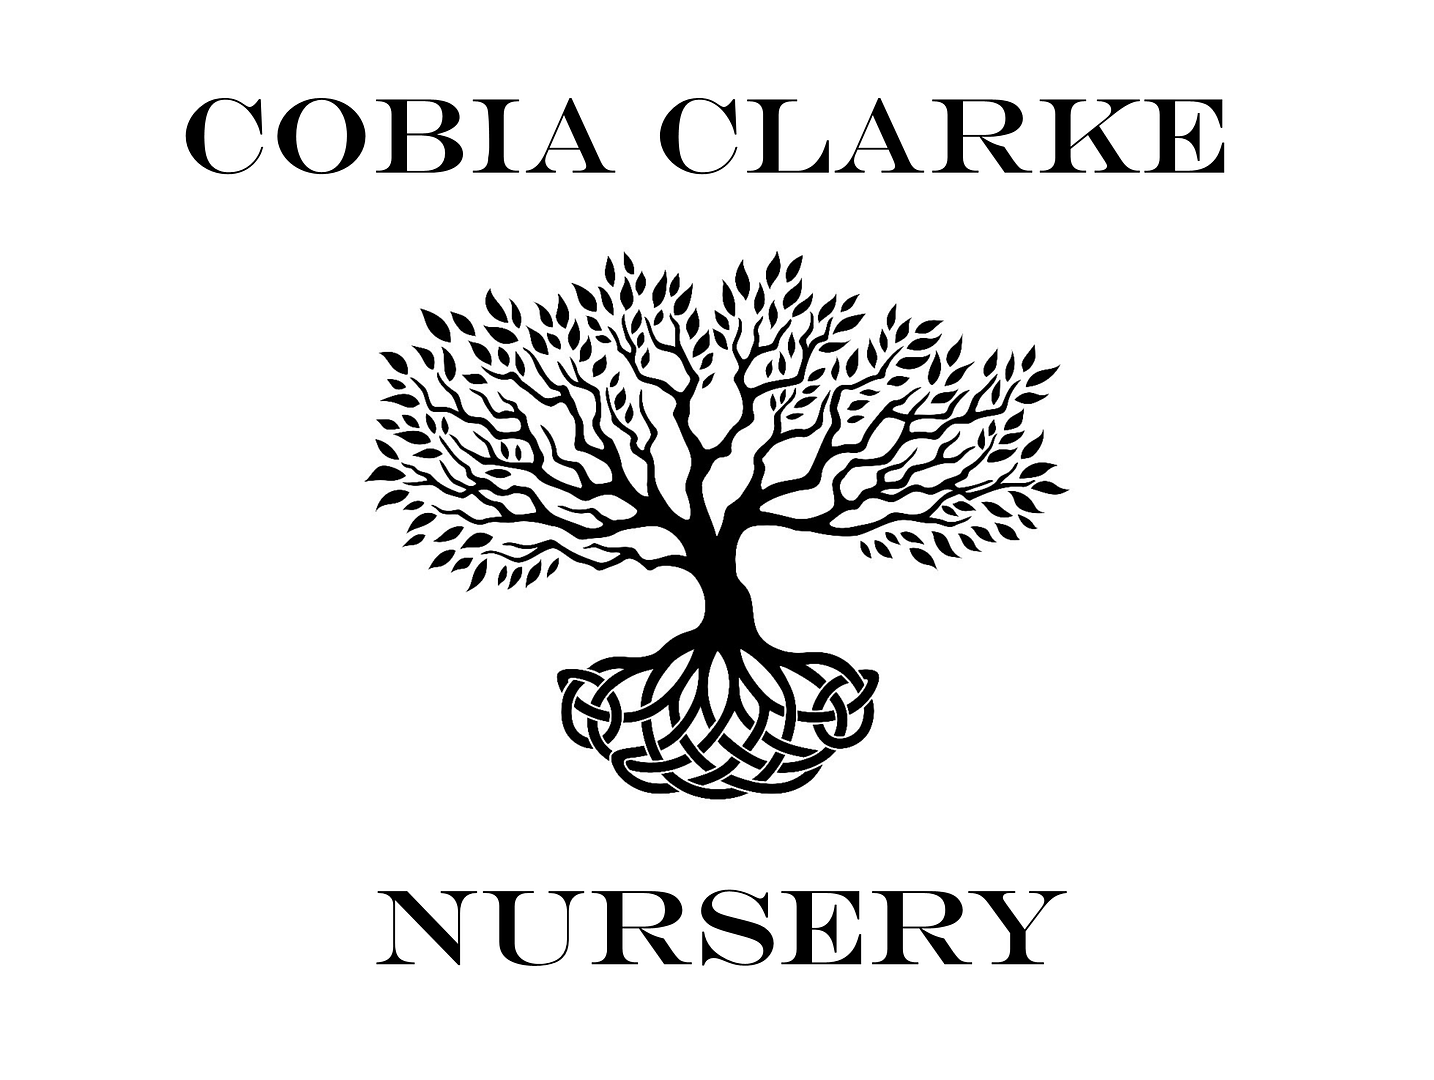 Cobia Clarke Nursery